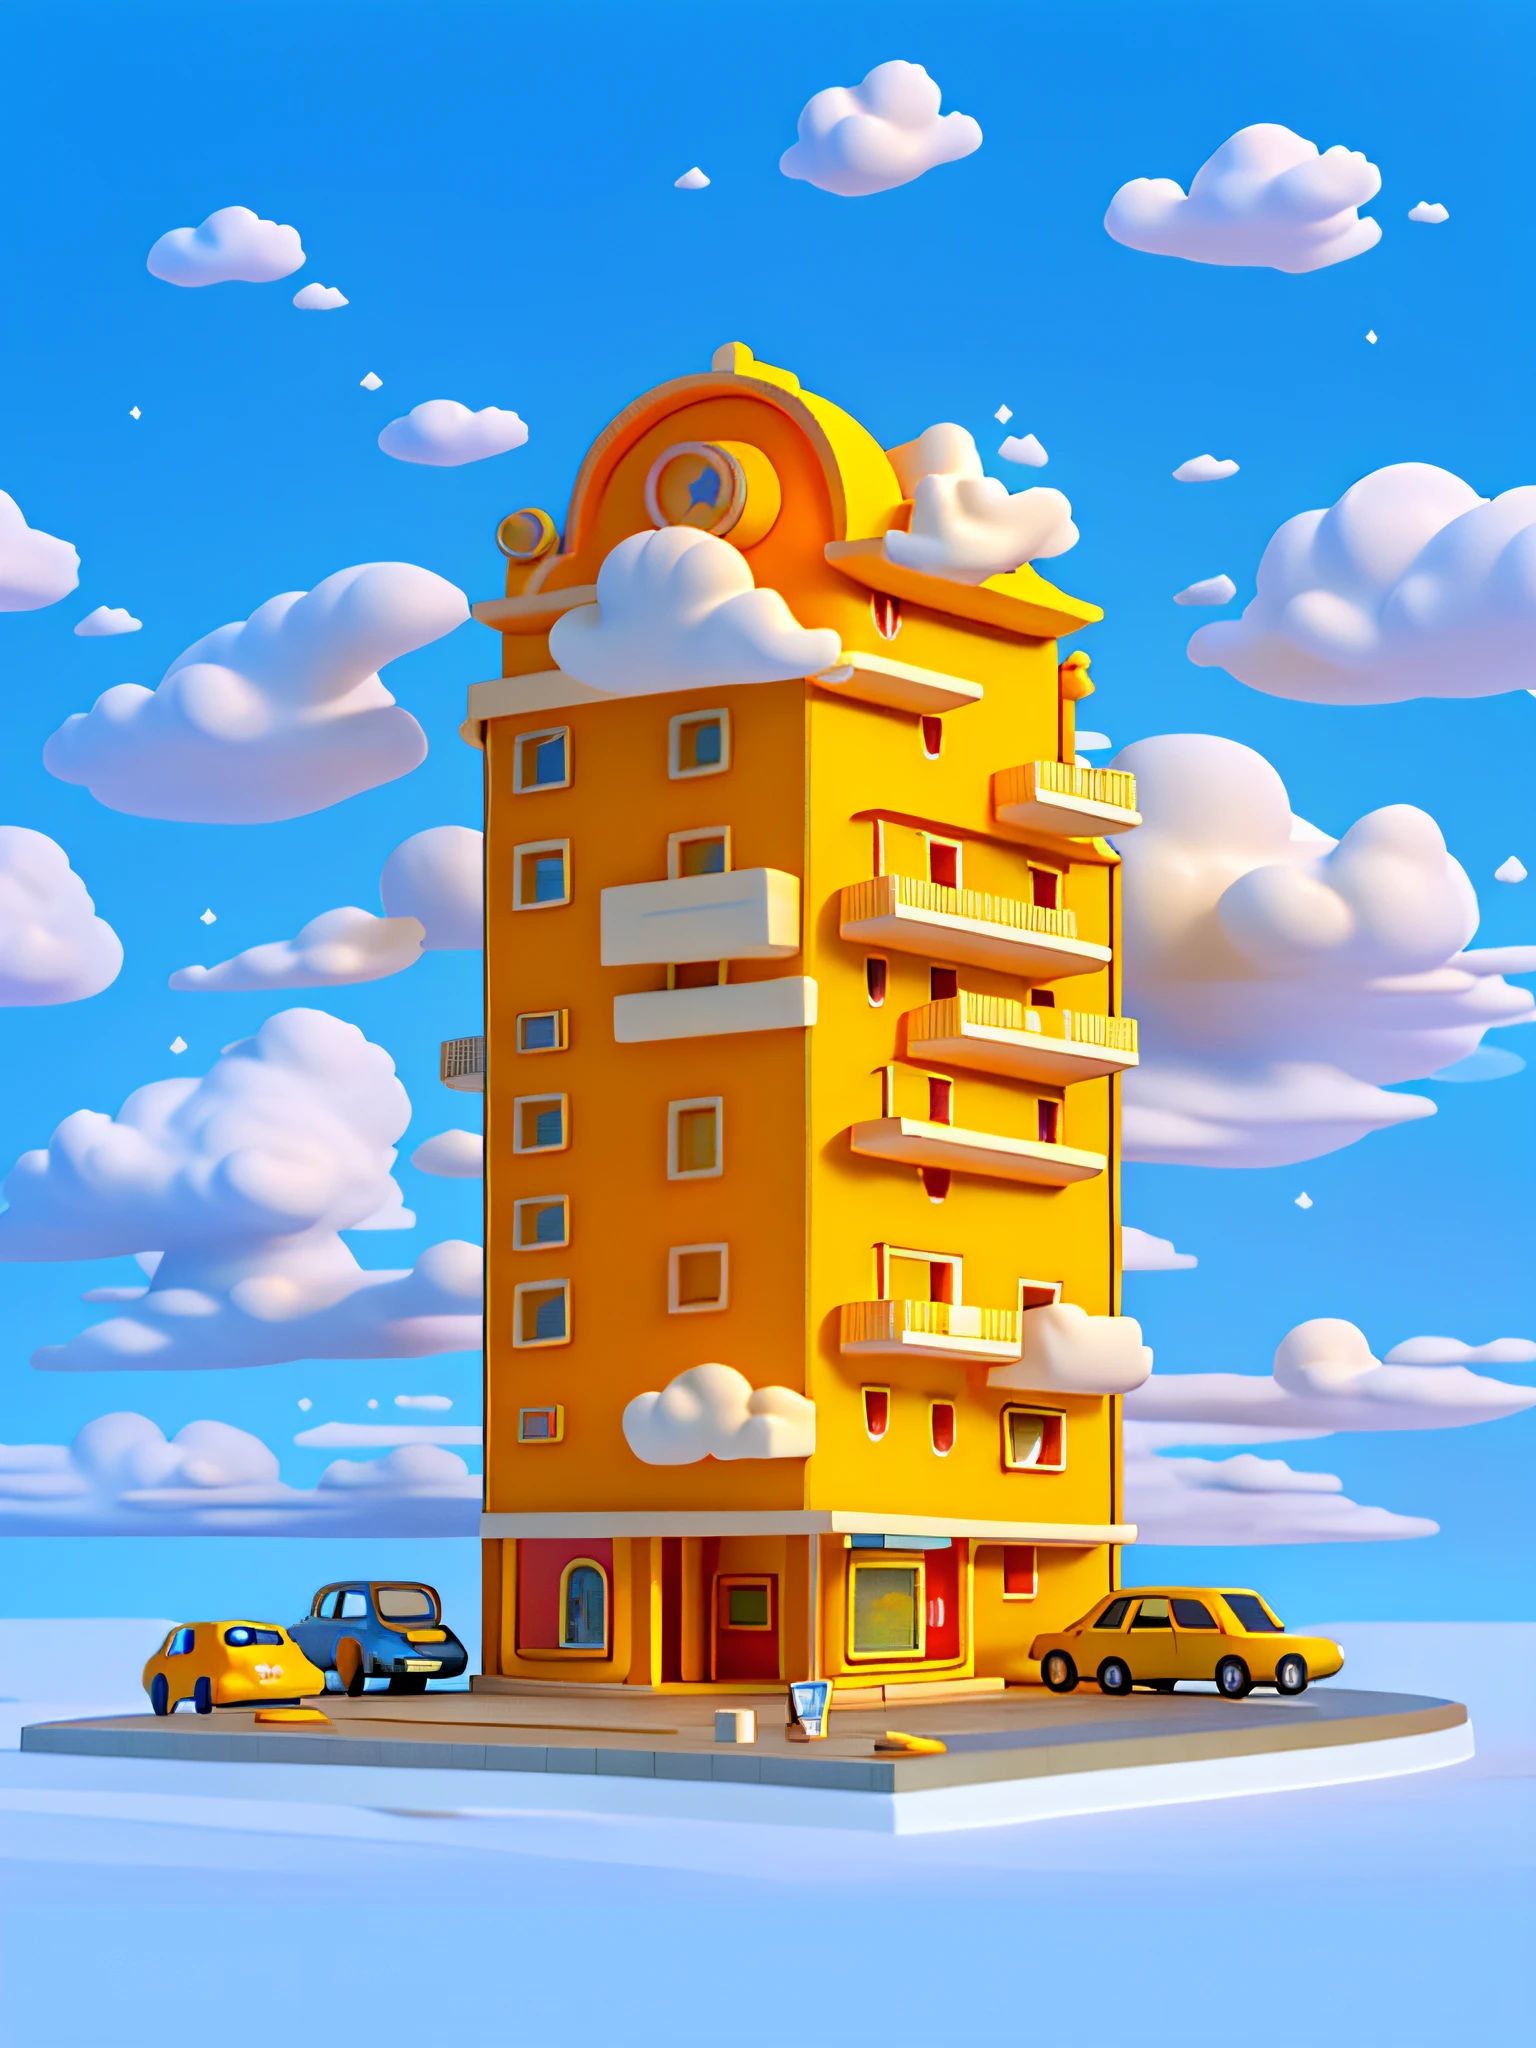 (chef-d&#39;œuvre), (Meilleure qualité), (ultra détaillé) Bâtiment D&#39;hôtel De Dessin Animé Simple, Hôtel Bâtiment de faible hauteur, Modèle de jouet, des nuages, voitures, vue de dessus, fond propre, Bâtiments jaune pâle et orange pâle,